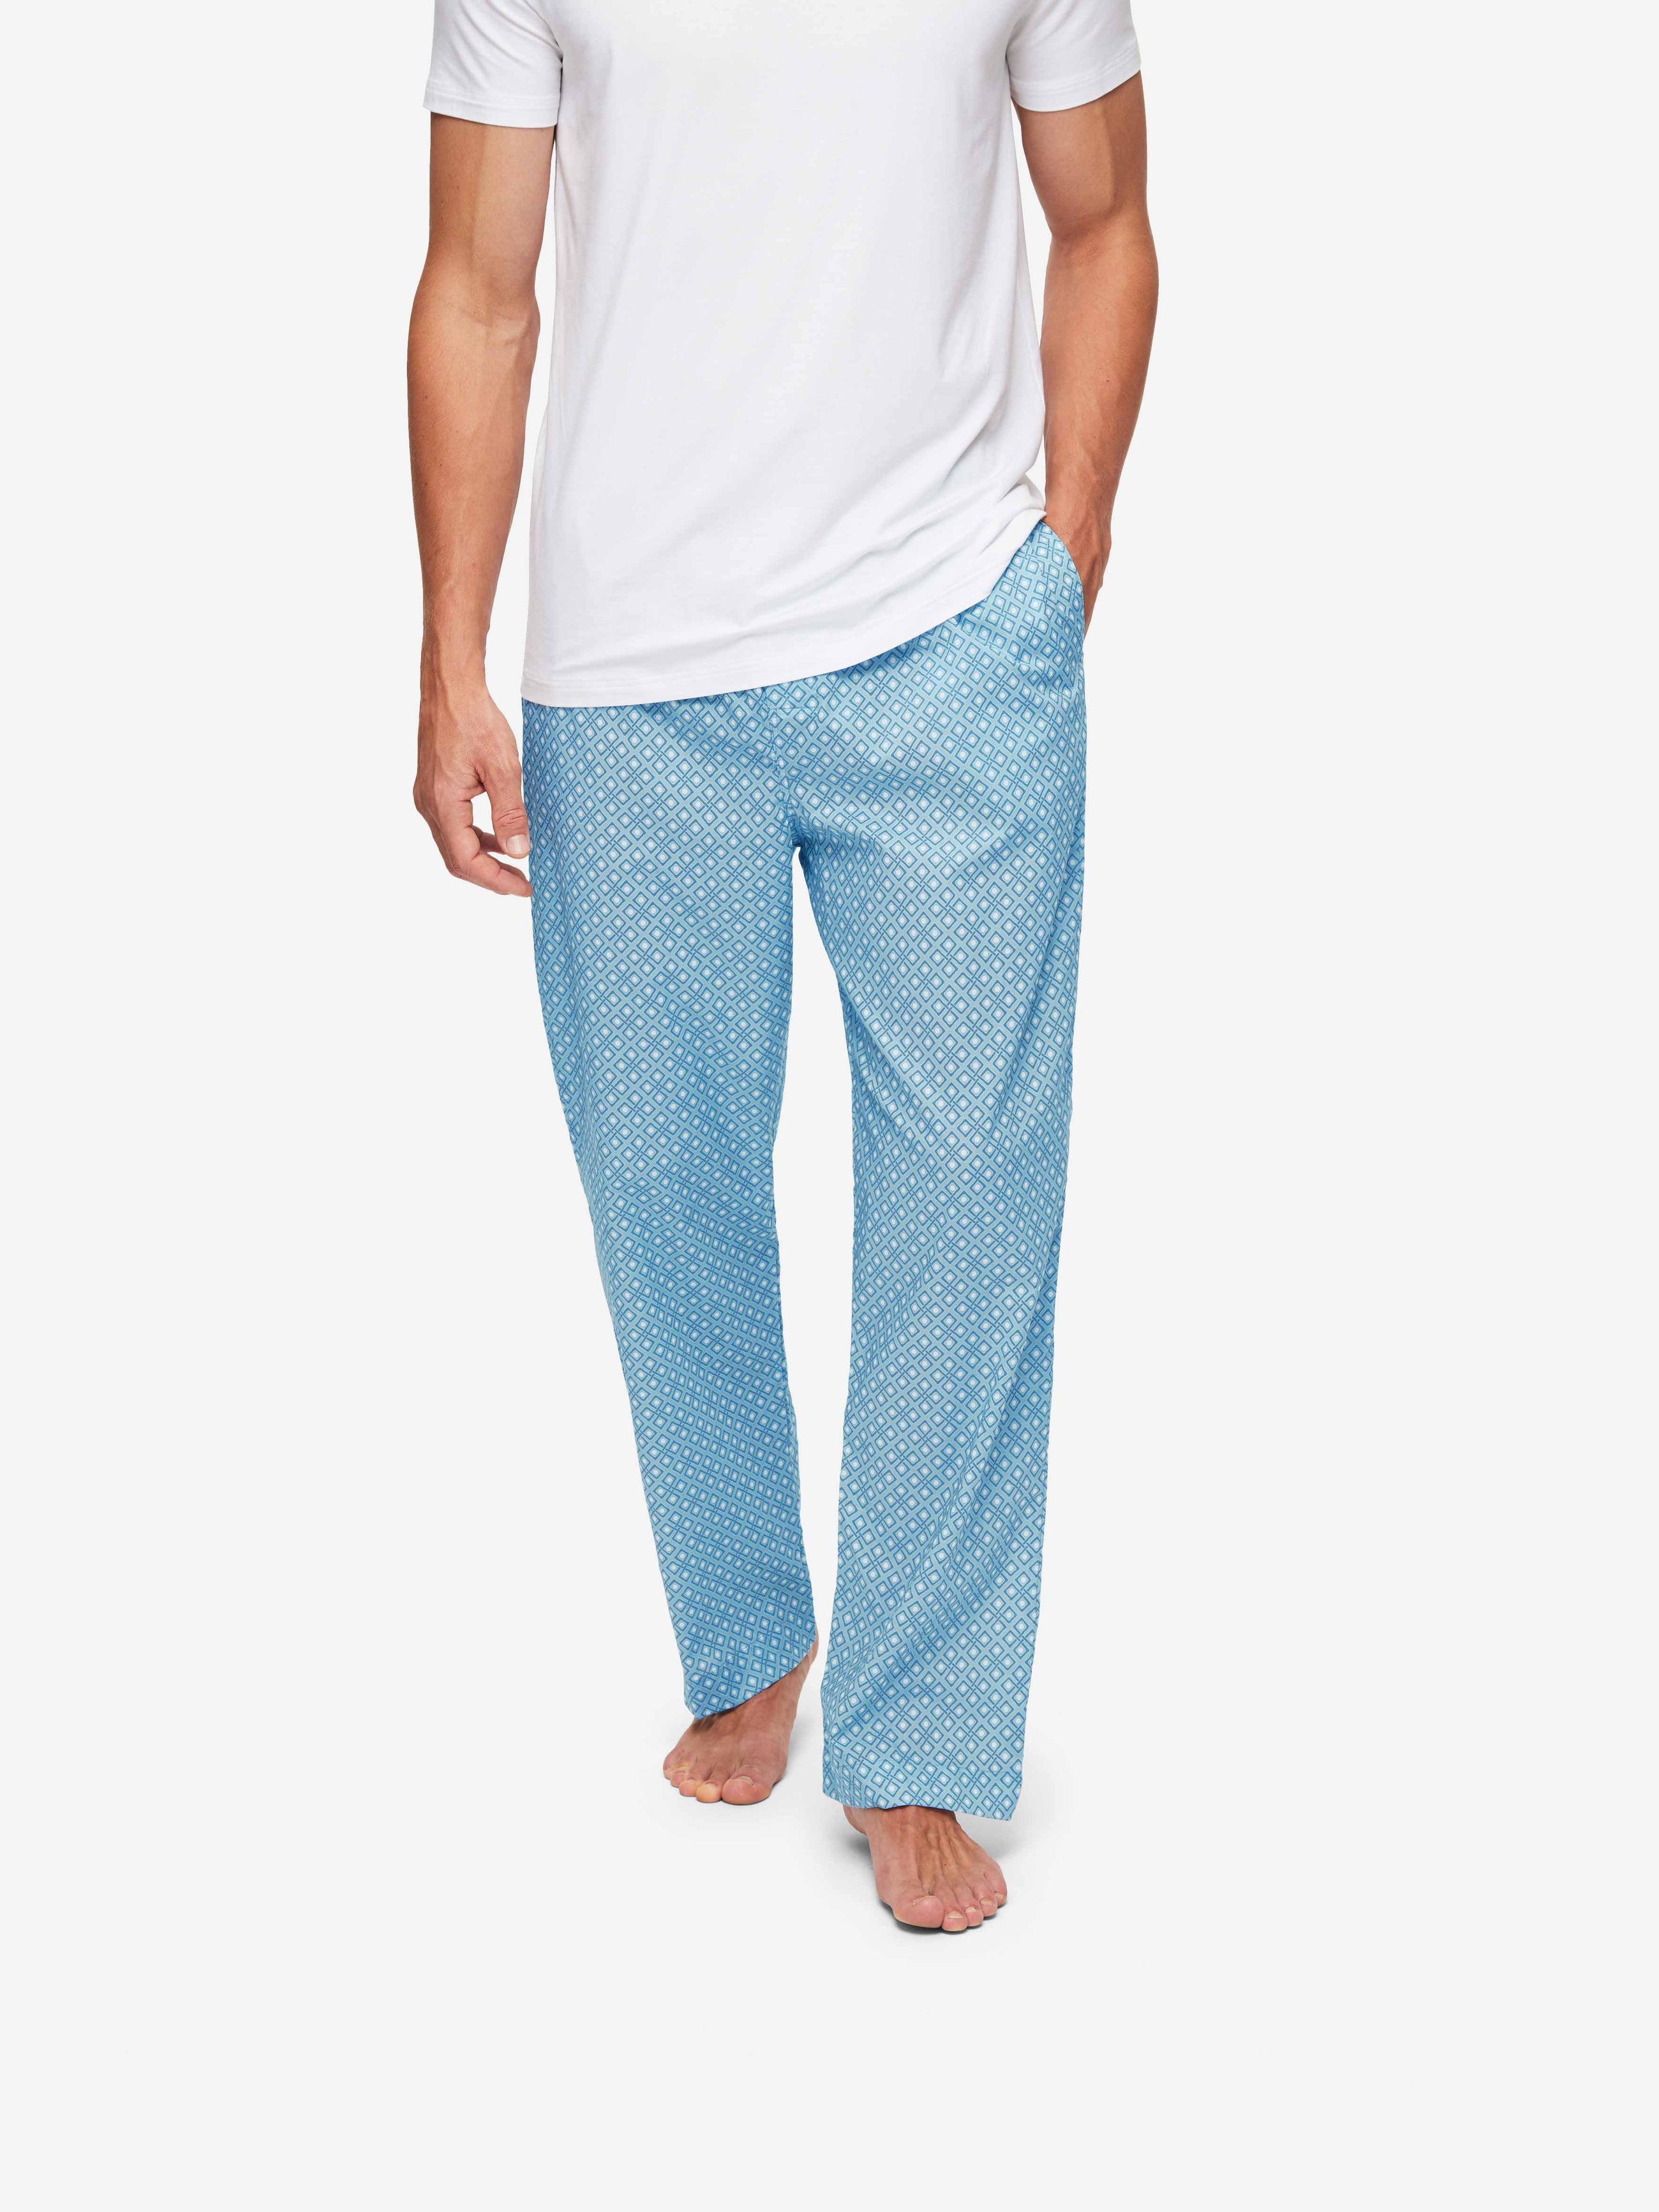 Men's Lounge Trousers Ledbury 56 Cotton Batiste Blue